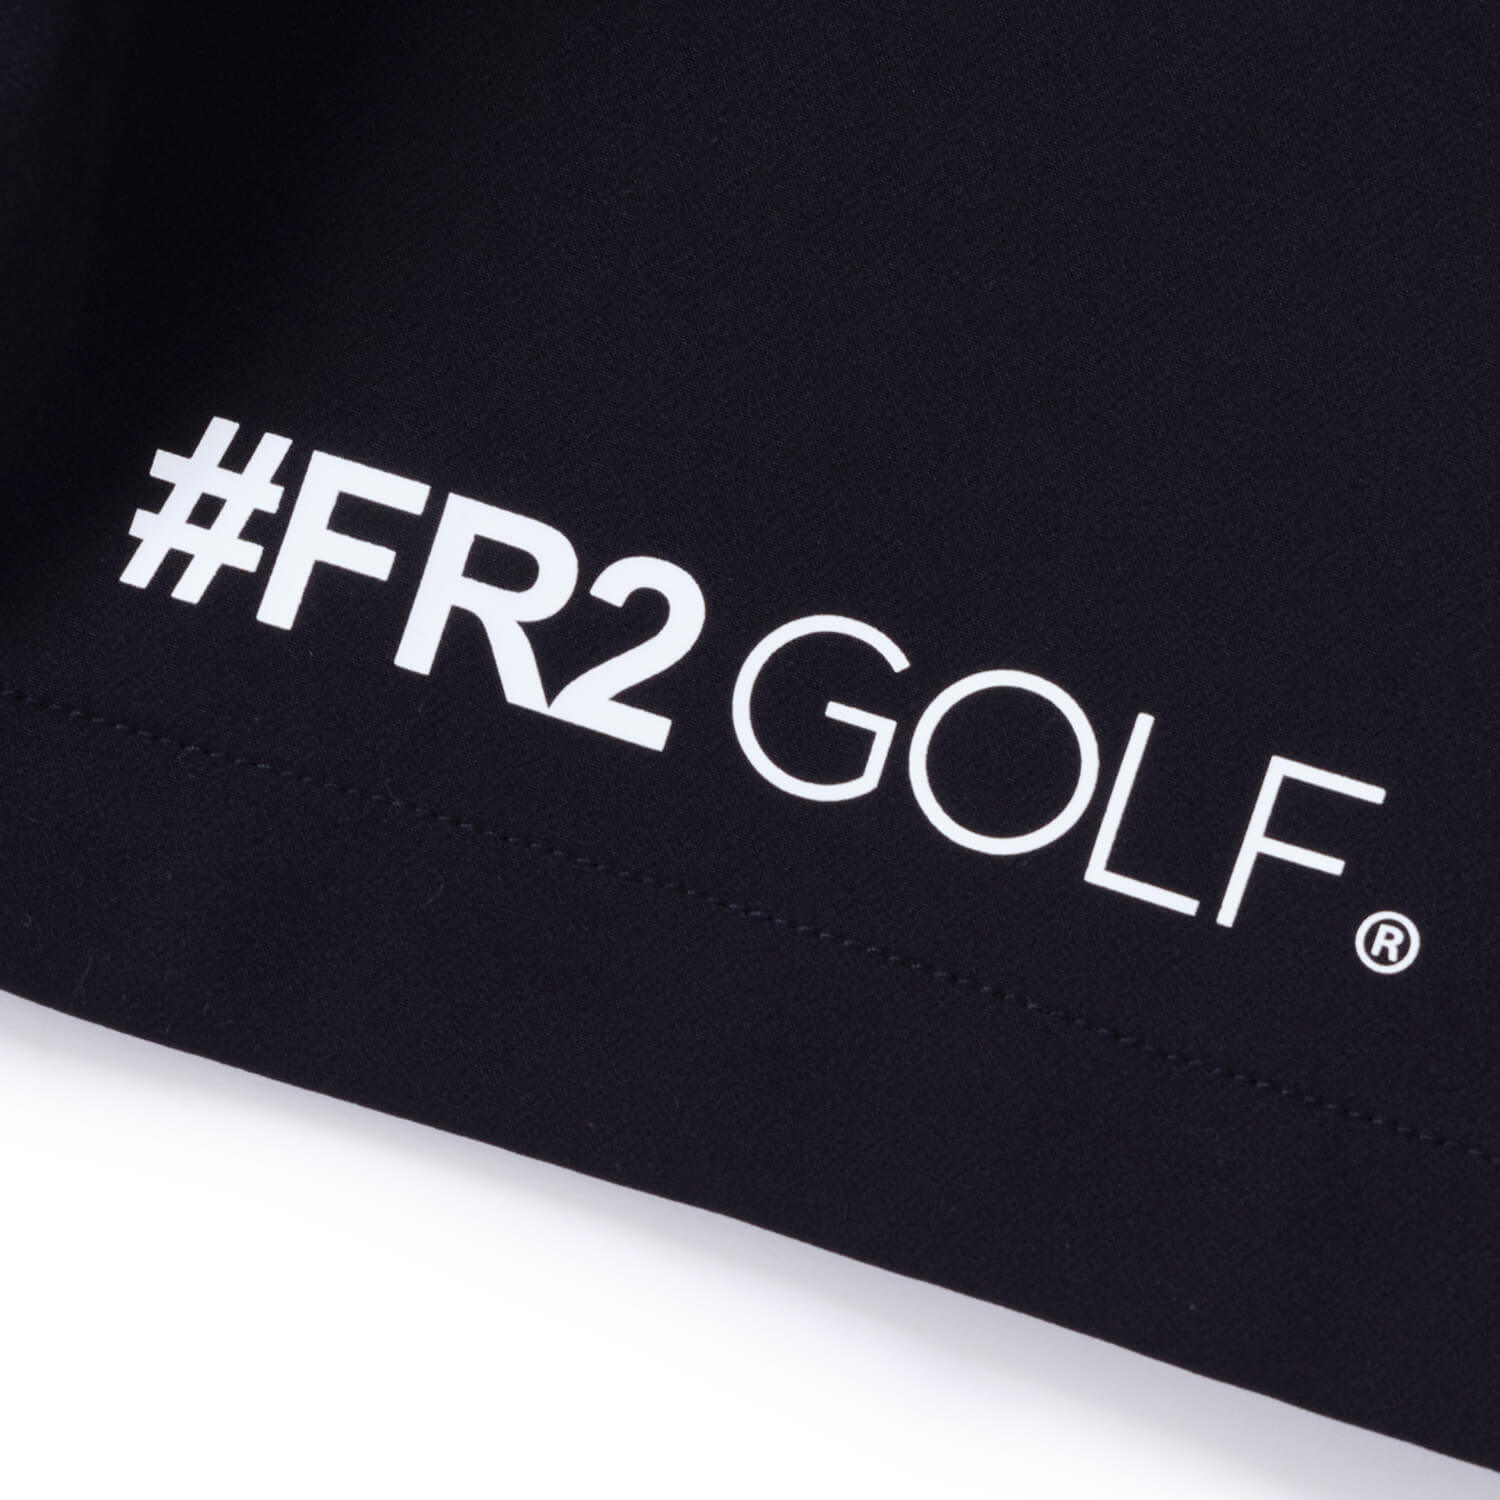 FR2 GOLF ゴルフ スウェットパンツ ゴルフパンツ